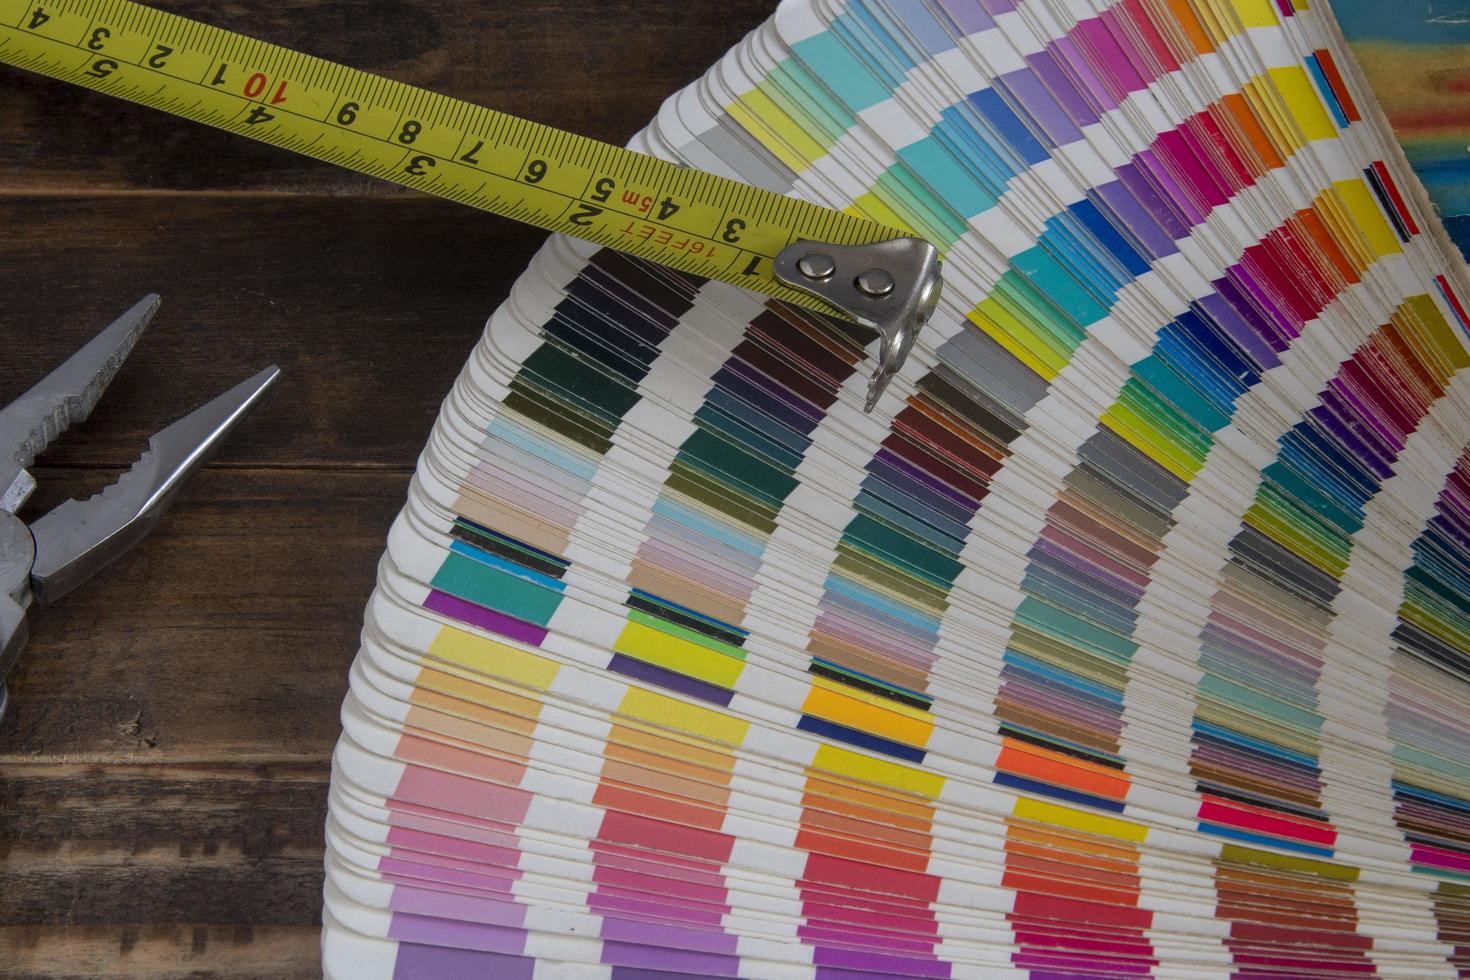 muestras de color utilizadas en artes gráficas, con una cinta métrica utilizada en la construcción foto